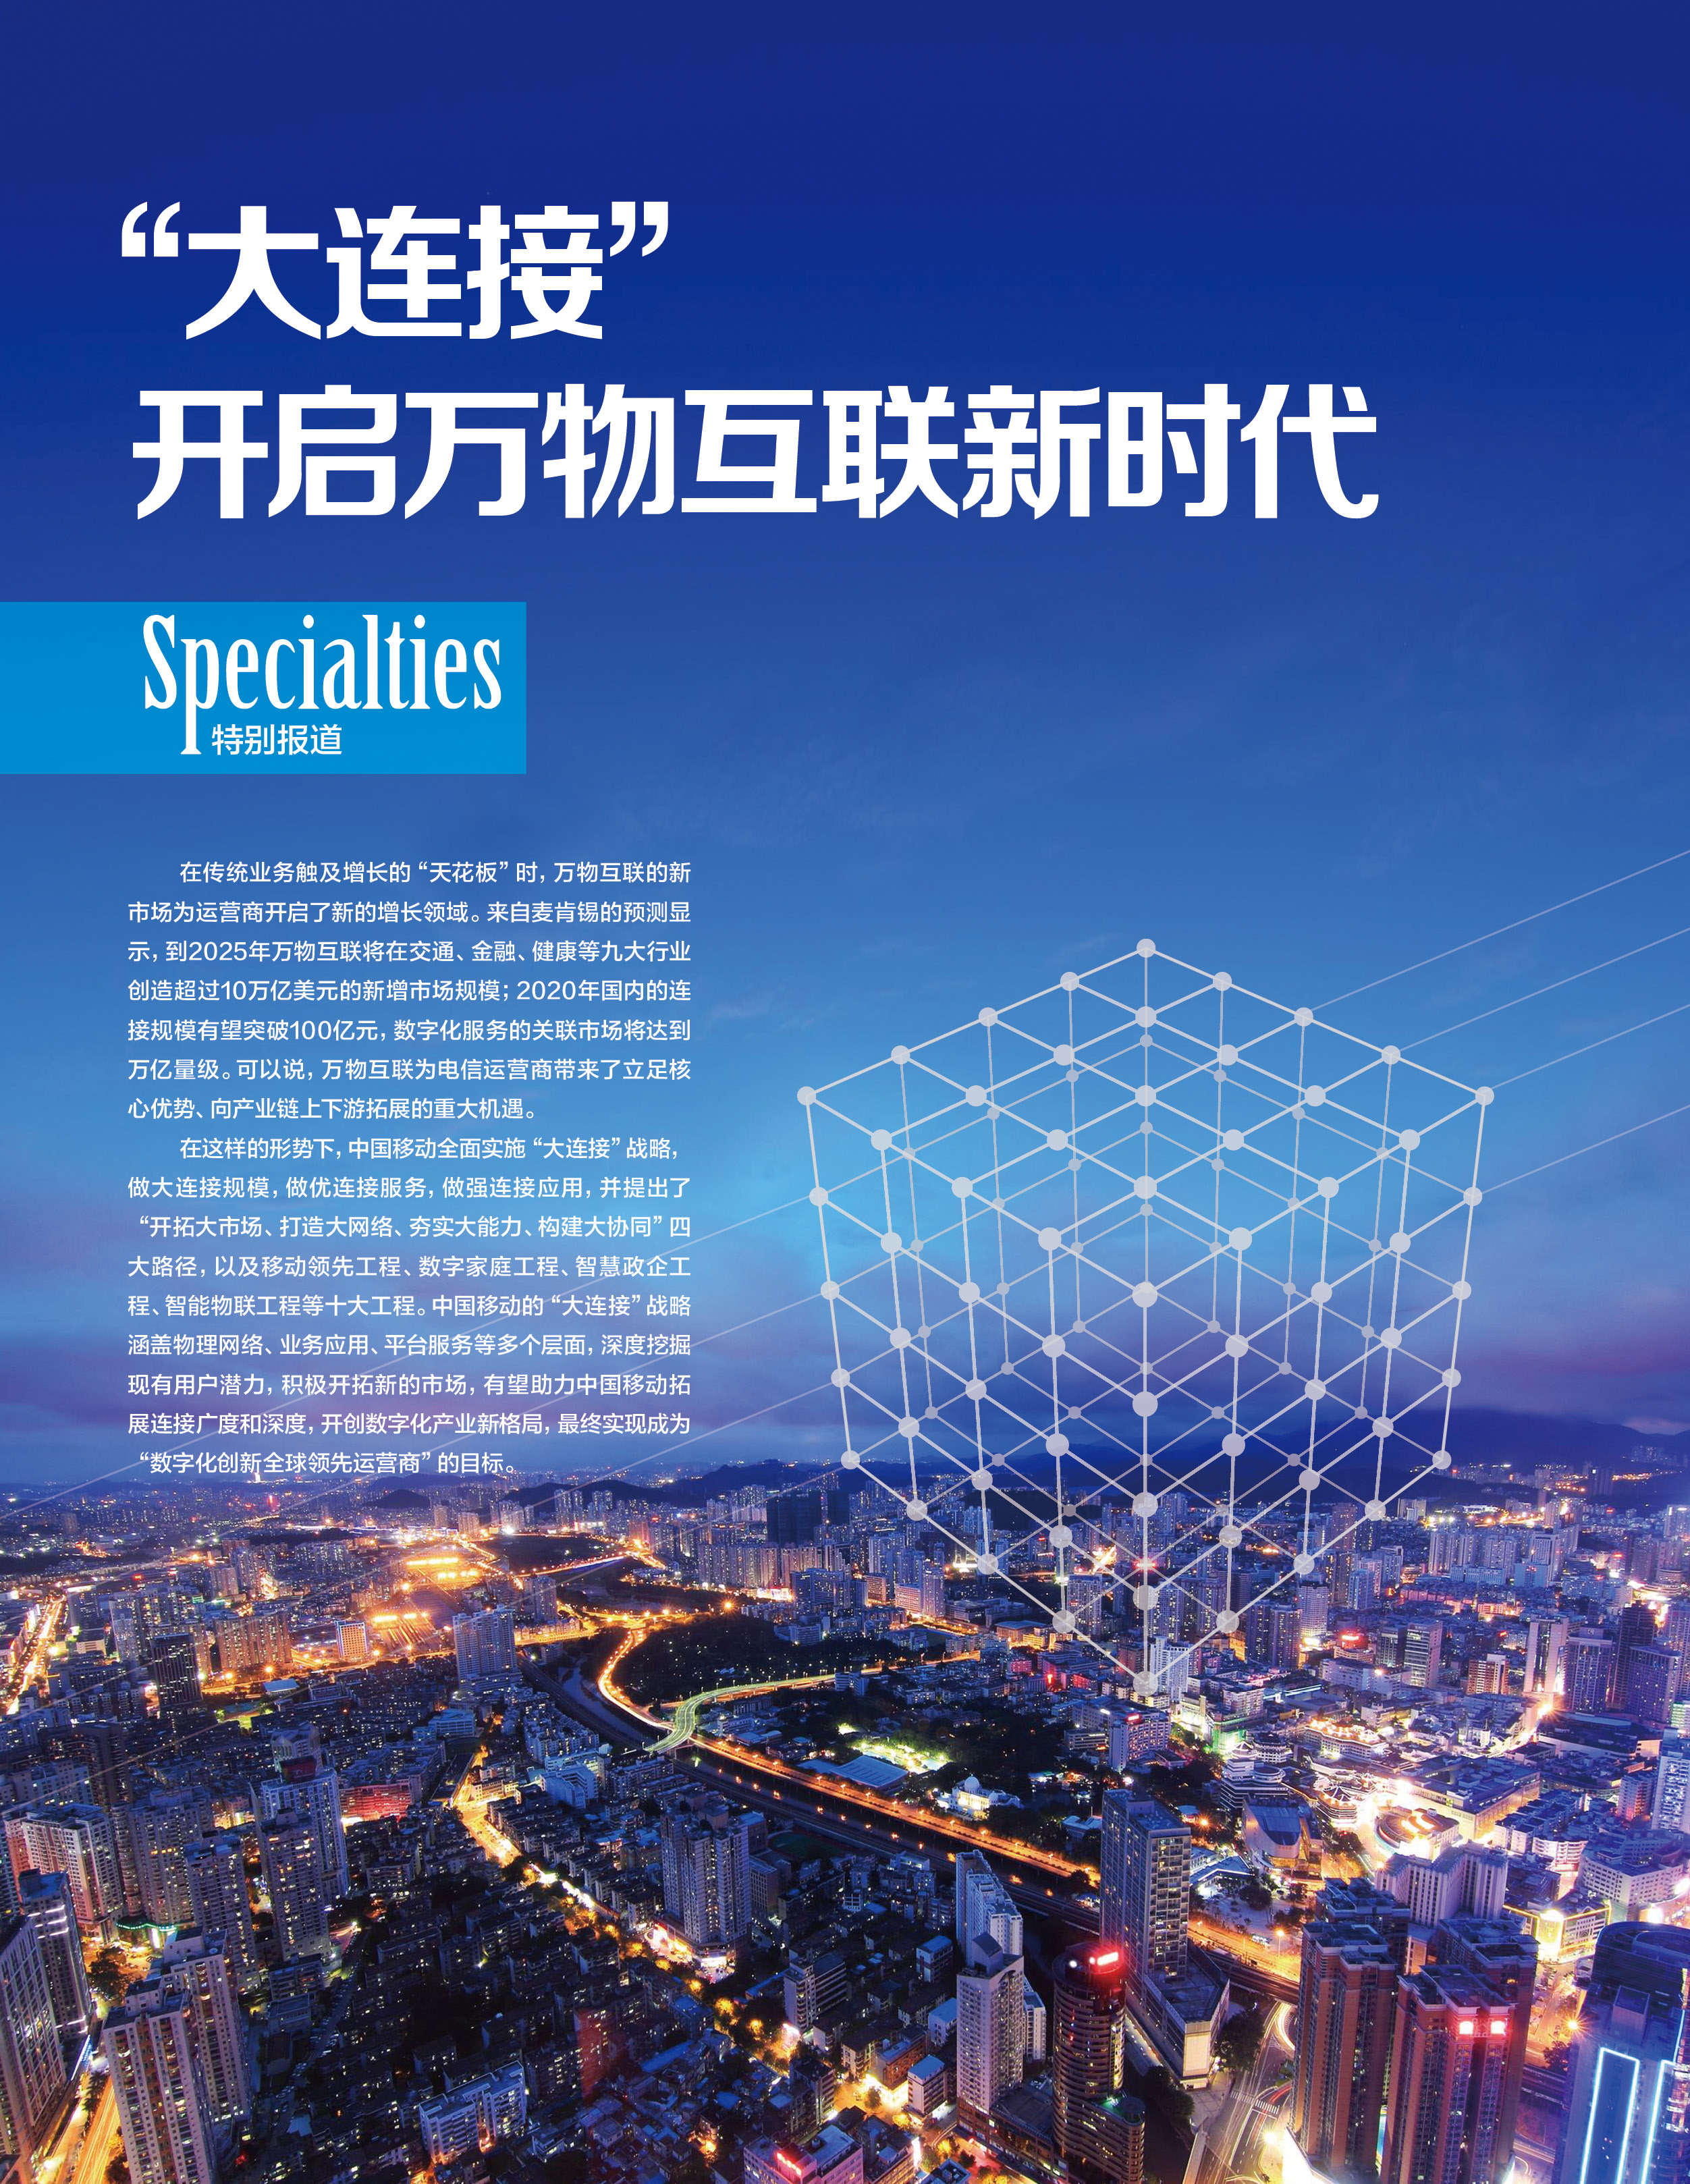 【特别策划】中国移动合作伙伴大会前瞻:“大连接”开启万物互联新时代-搜狐